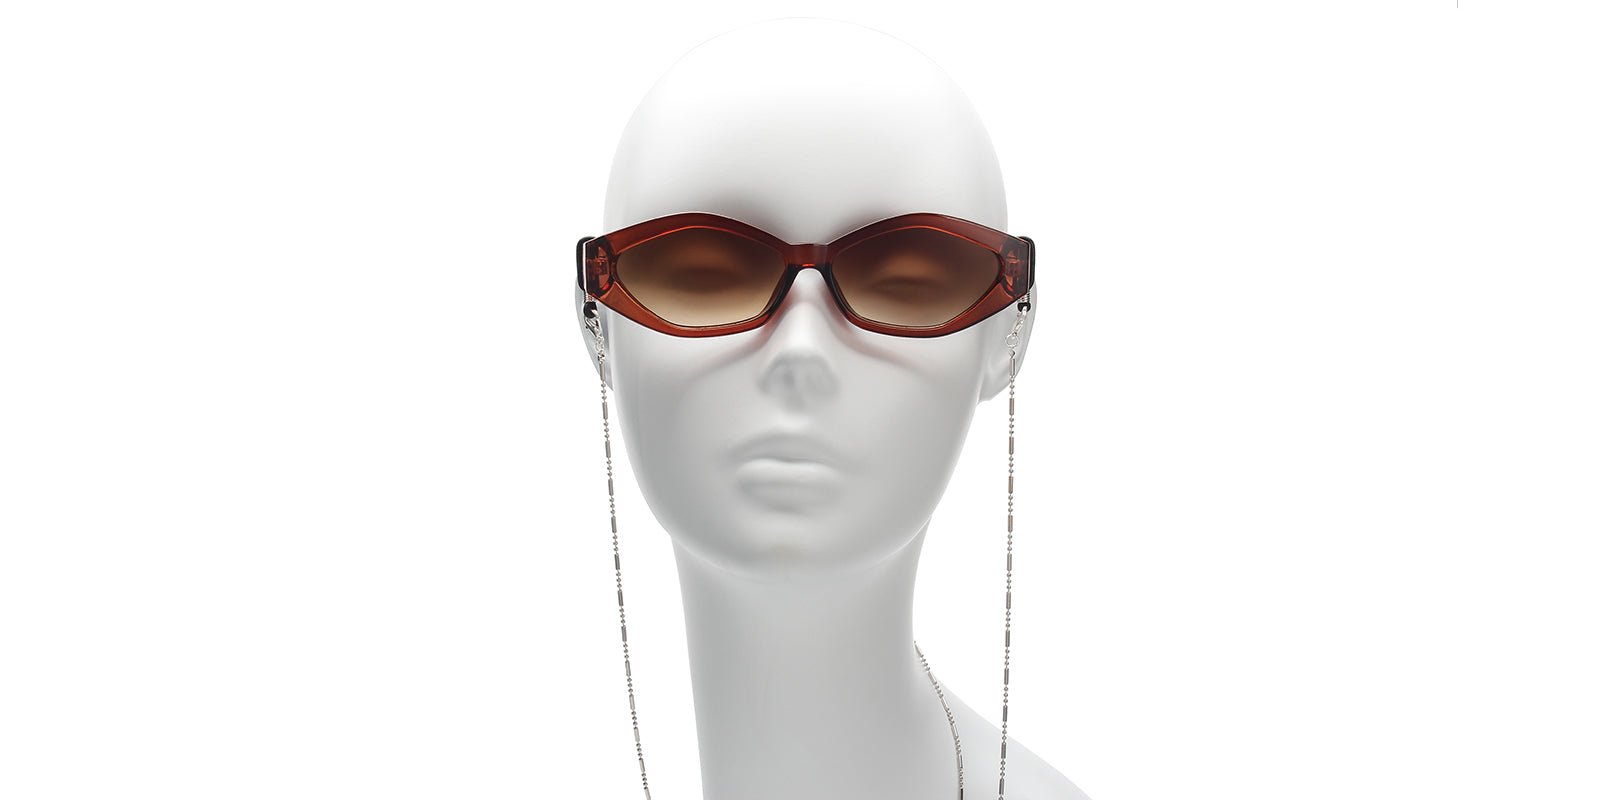 Lurker + Dagger - Non-Polarized Sunglasses For Driving